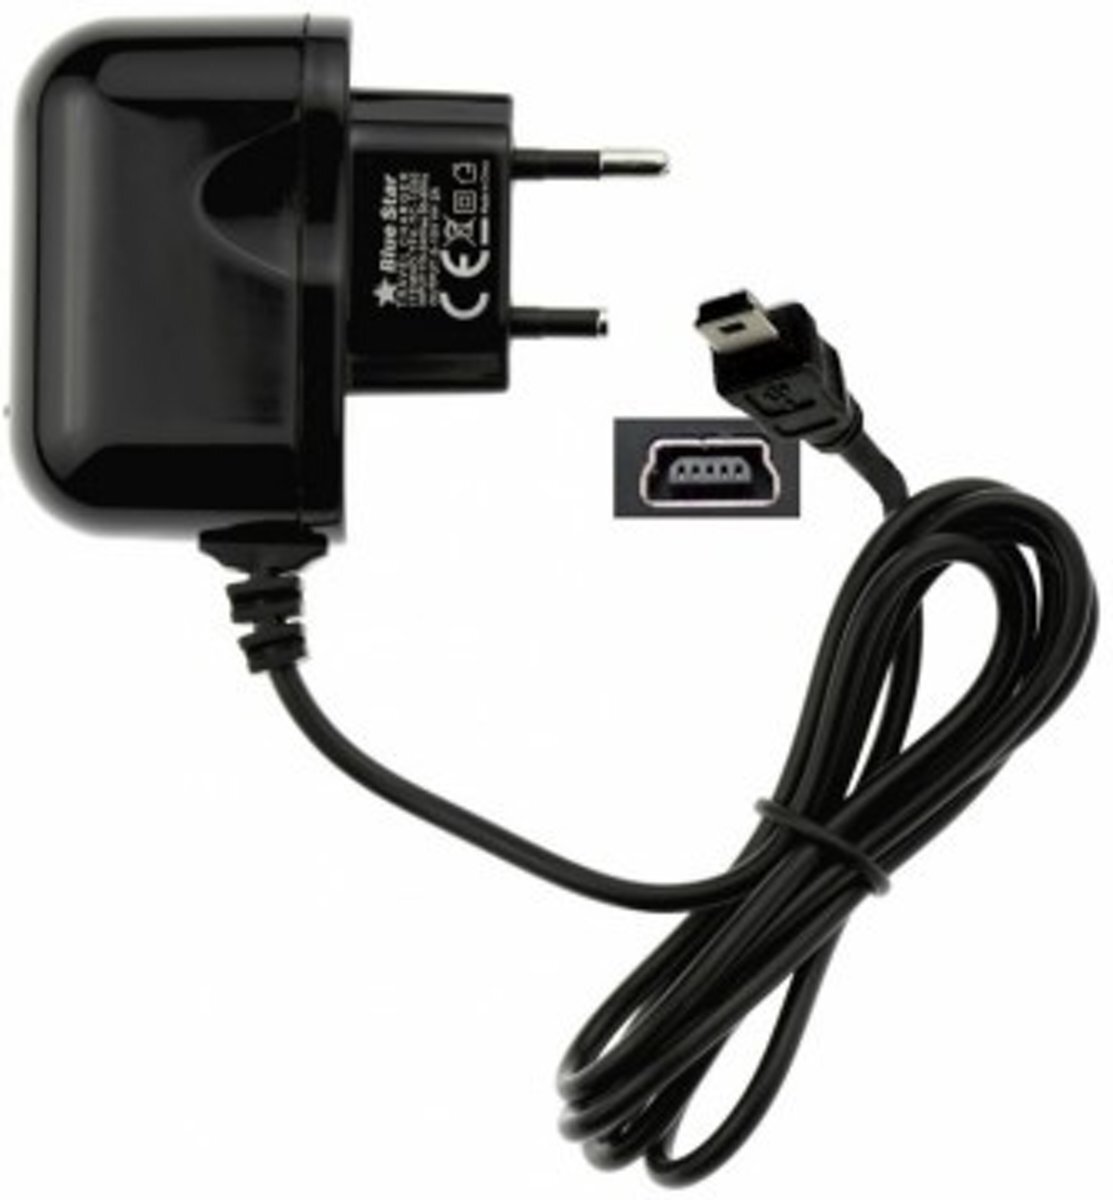 ABC-LED Oplader 220V voor TomTom GO 940 - 2 ampere lader